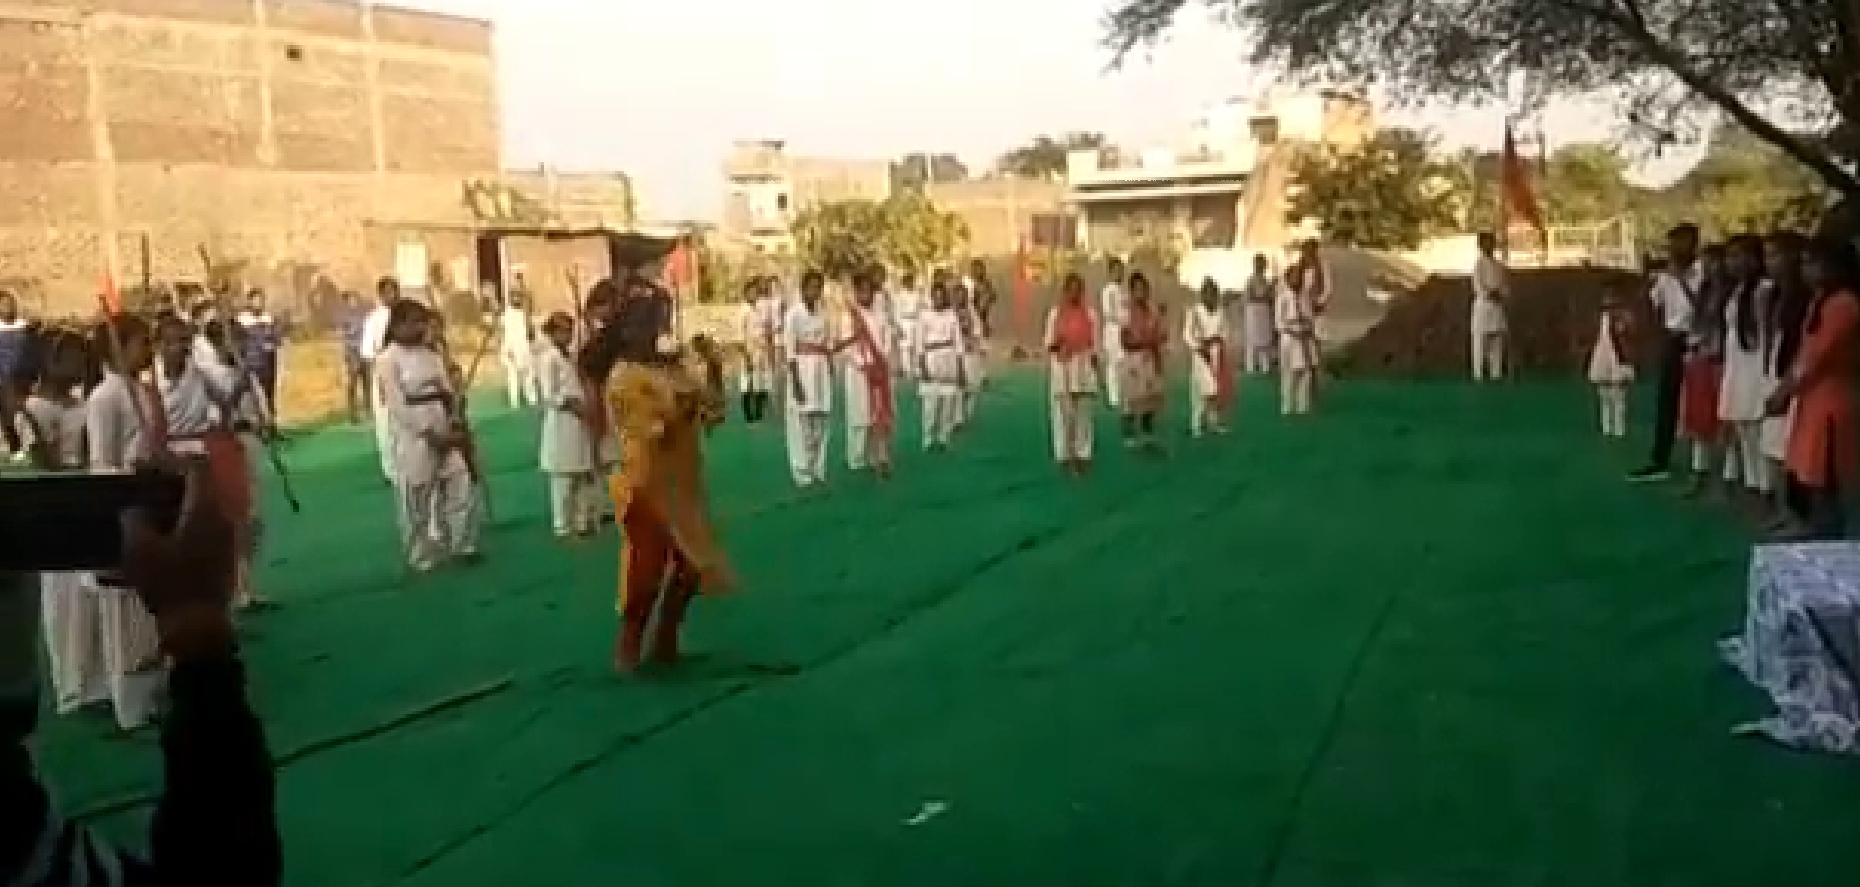 लव जिहाद से बचाने के लिए ट्रेनिंग, उज्जैन में हिंदू संगठन ने लगाया कैंप, अस्त्र-शस्त्र चलाना भी सिखाया